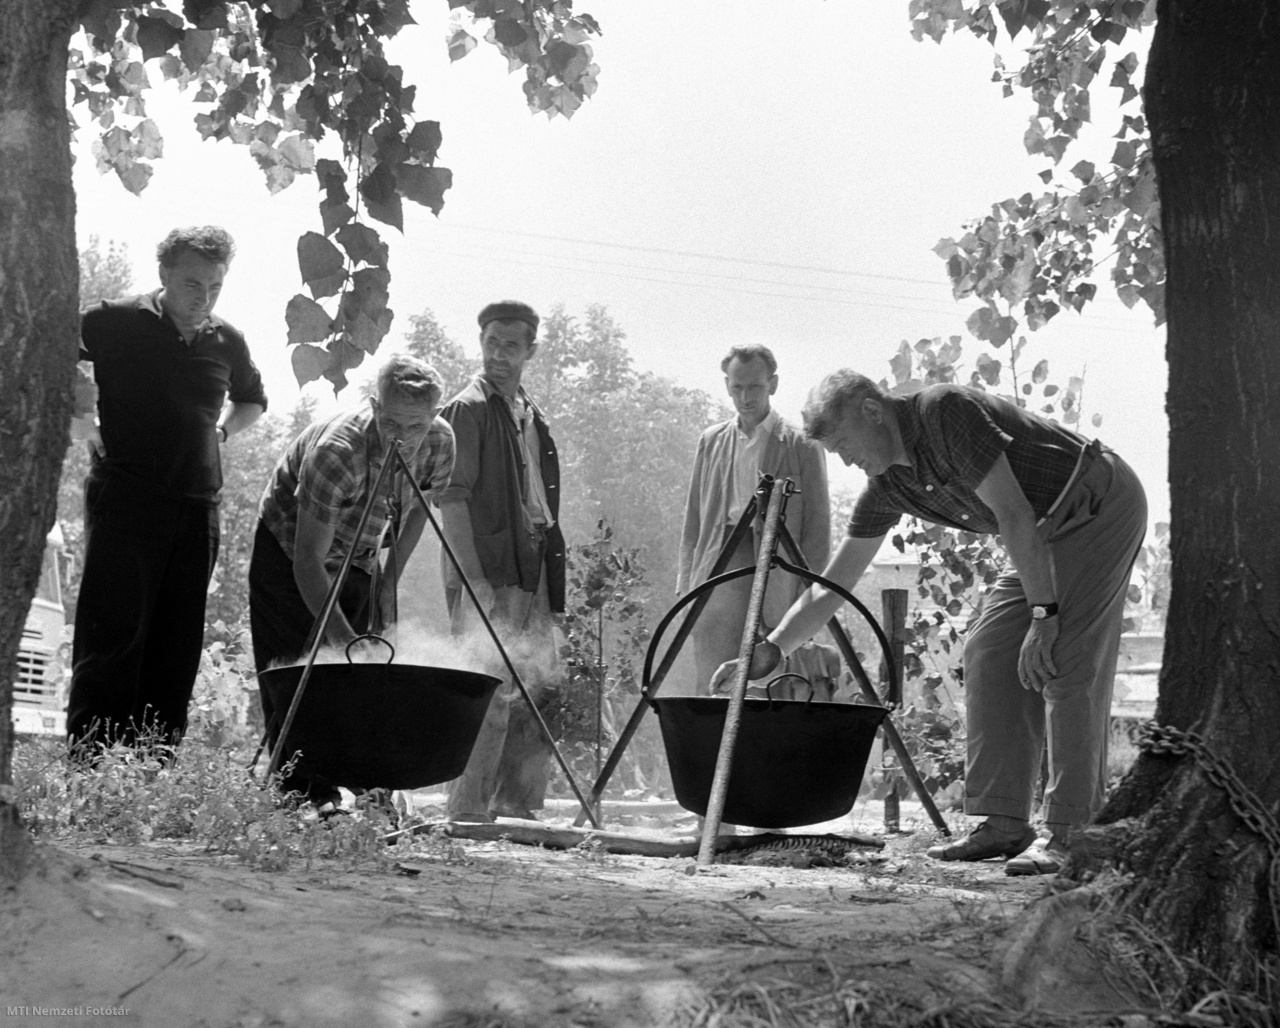 Győr, 1964. július 14. Bográcsokban nyílt tűzön készül a halászlé a Halászati Termelőszövetkezetek Központi Intézőbizottságának tagjainak, az Előre Halászati Szövetkezet telepén. Az ország vezető halászati szakemberei, a dunai halászszövetkezetek, valamint az ország más területén működő halászati szövetkezetek idei első féléves munkáját beszélték meg, és megismerkedtek Győr-Sopron megye élővízi halászatával a Győri Előre Halászati Termelőszövetkezet vendégeként.